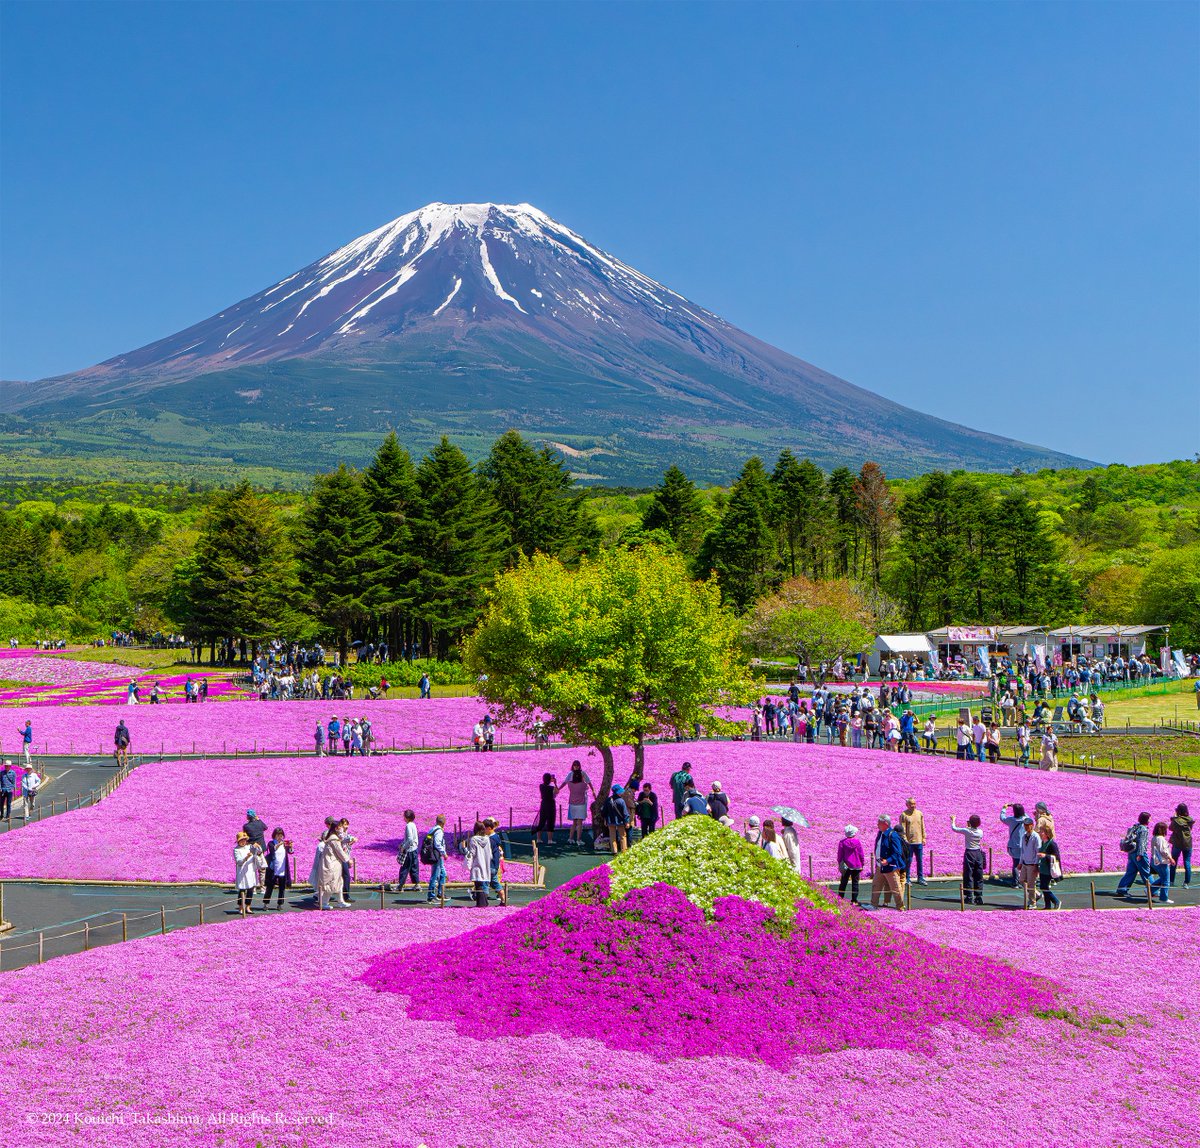 初夏の富士山と芝桜が綺麗でした✨
#NaturePhotography  #Flowers